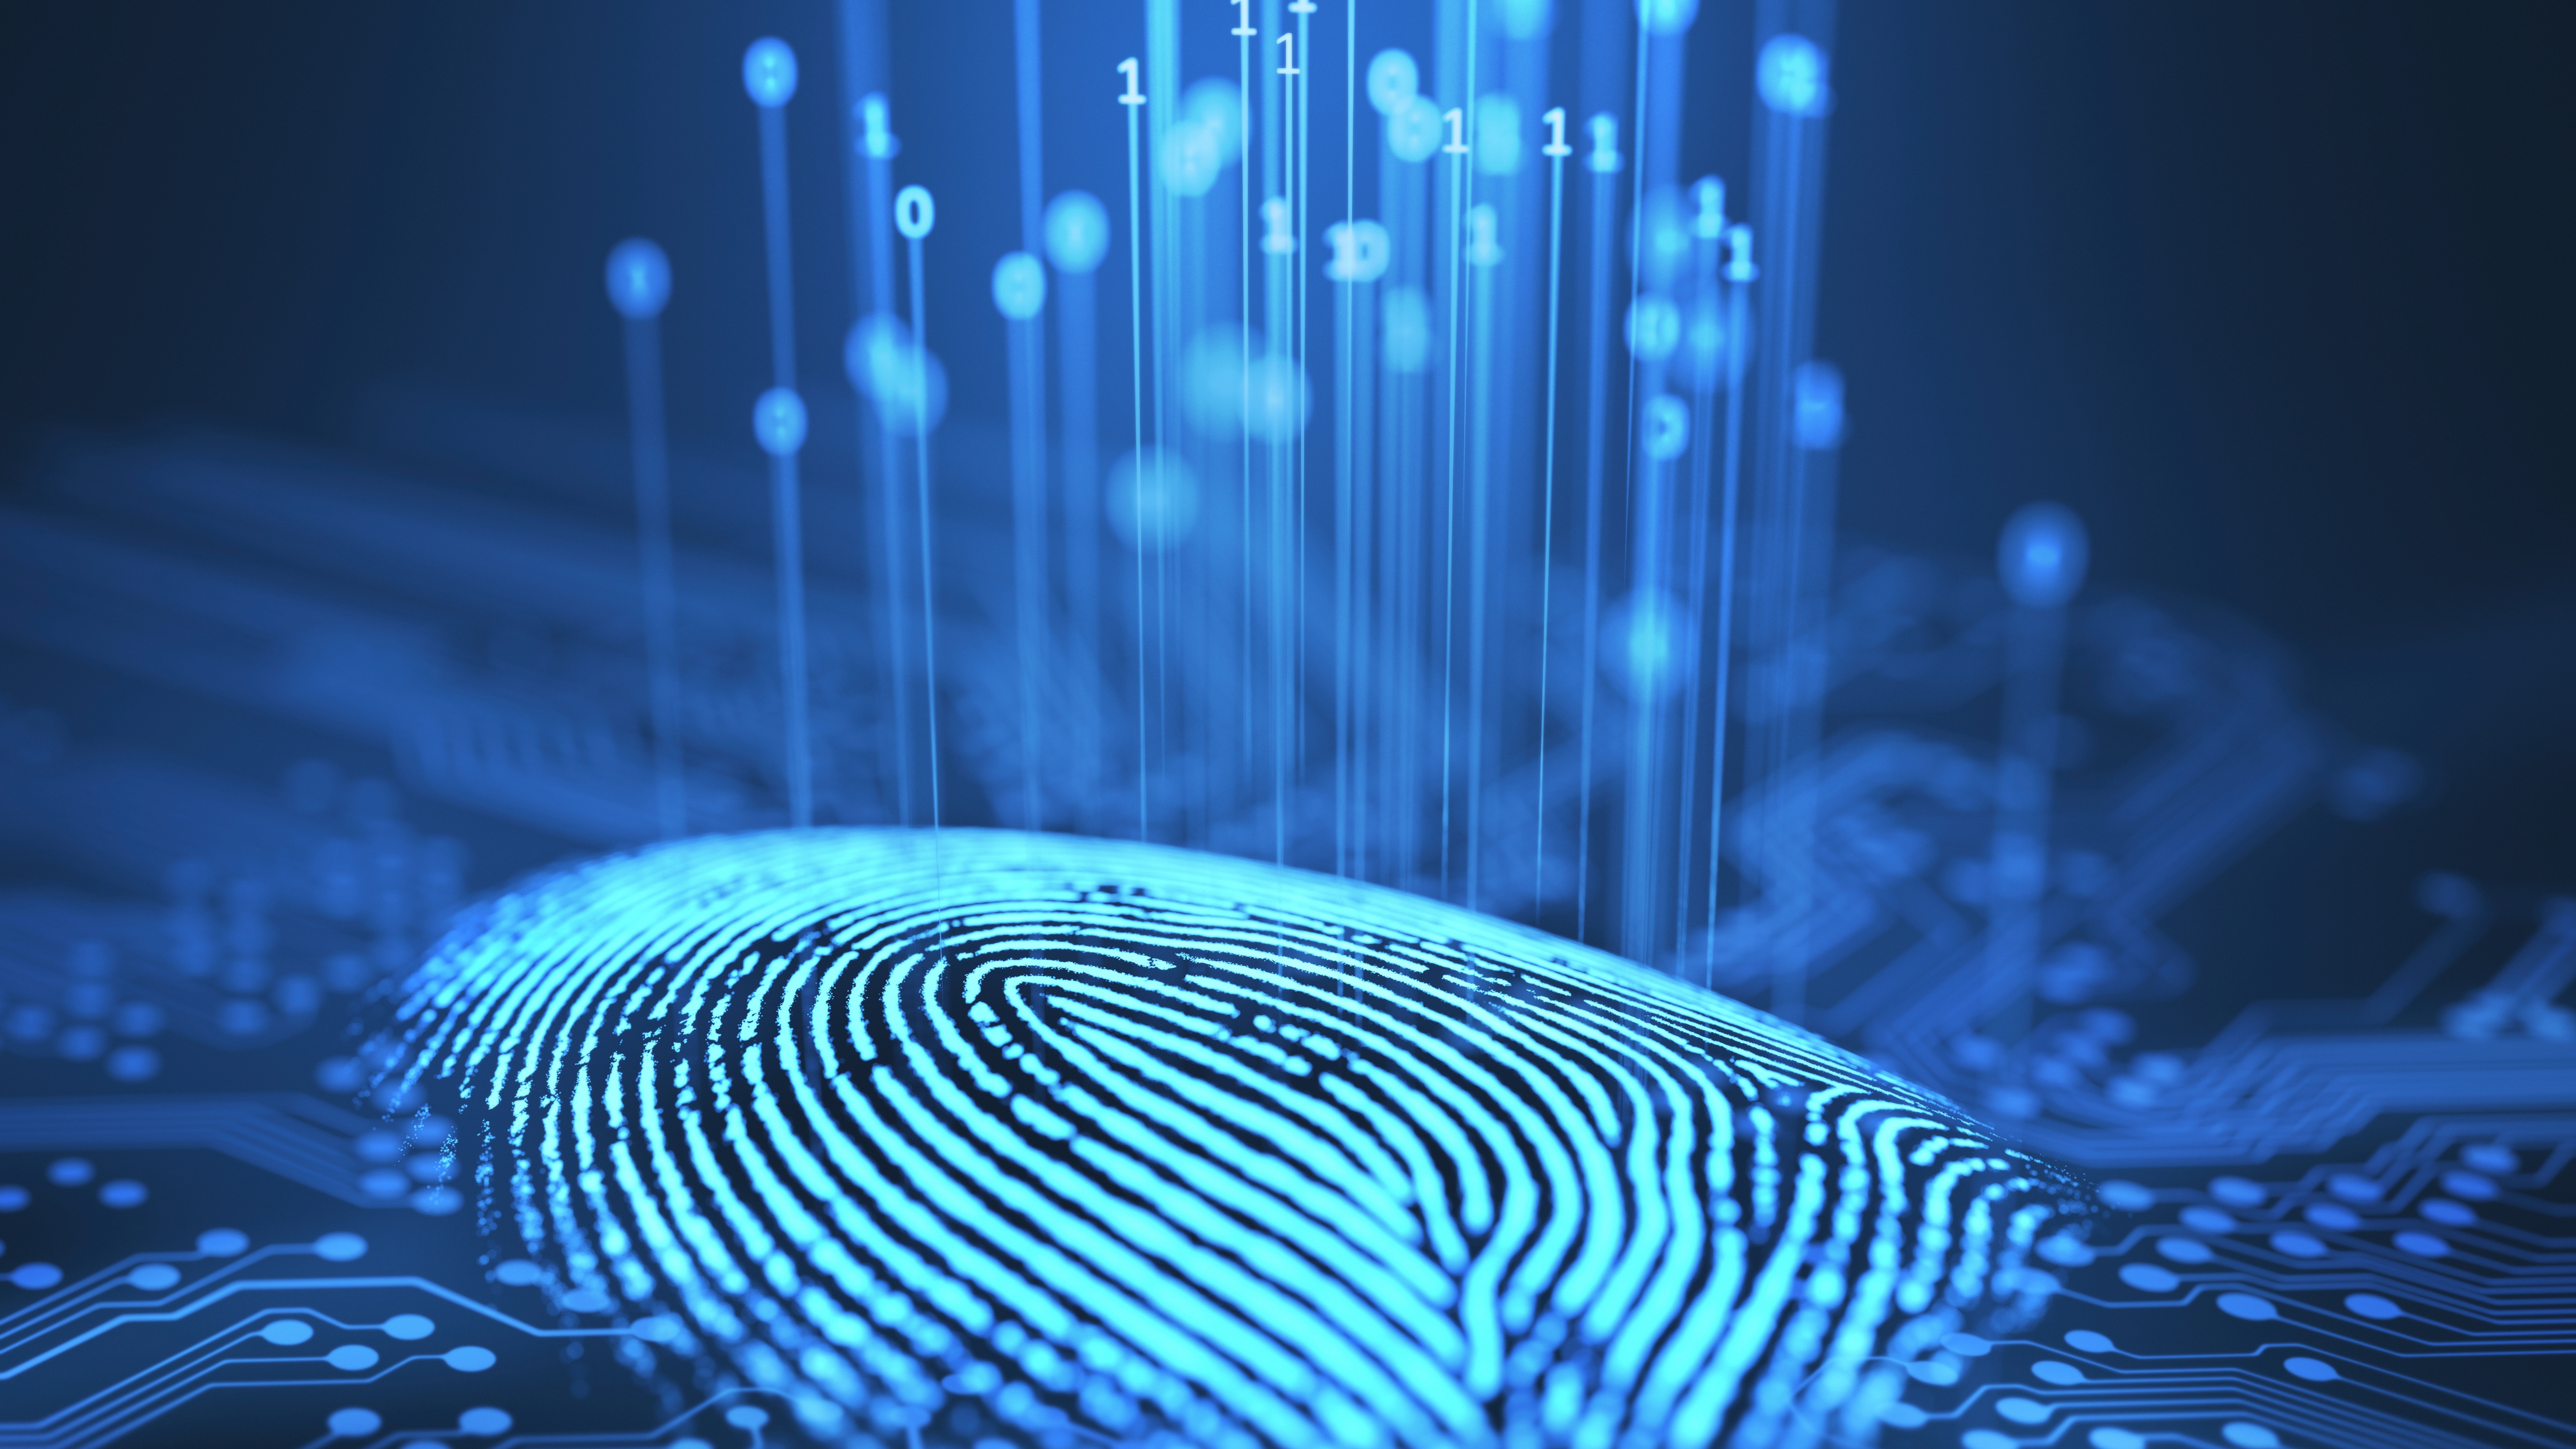 Fingerprint and printed circuit board